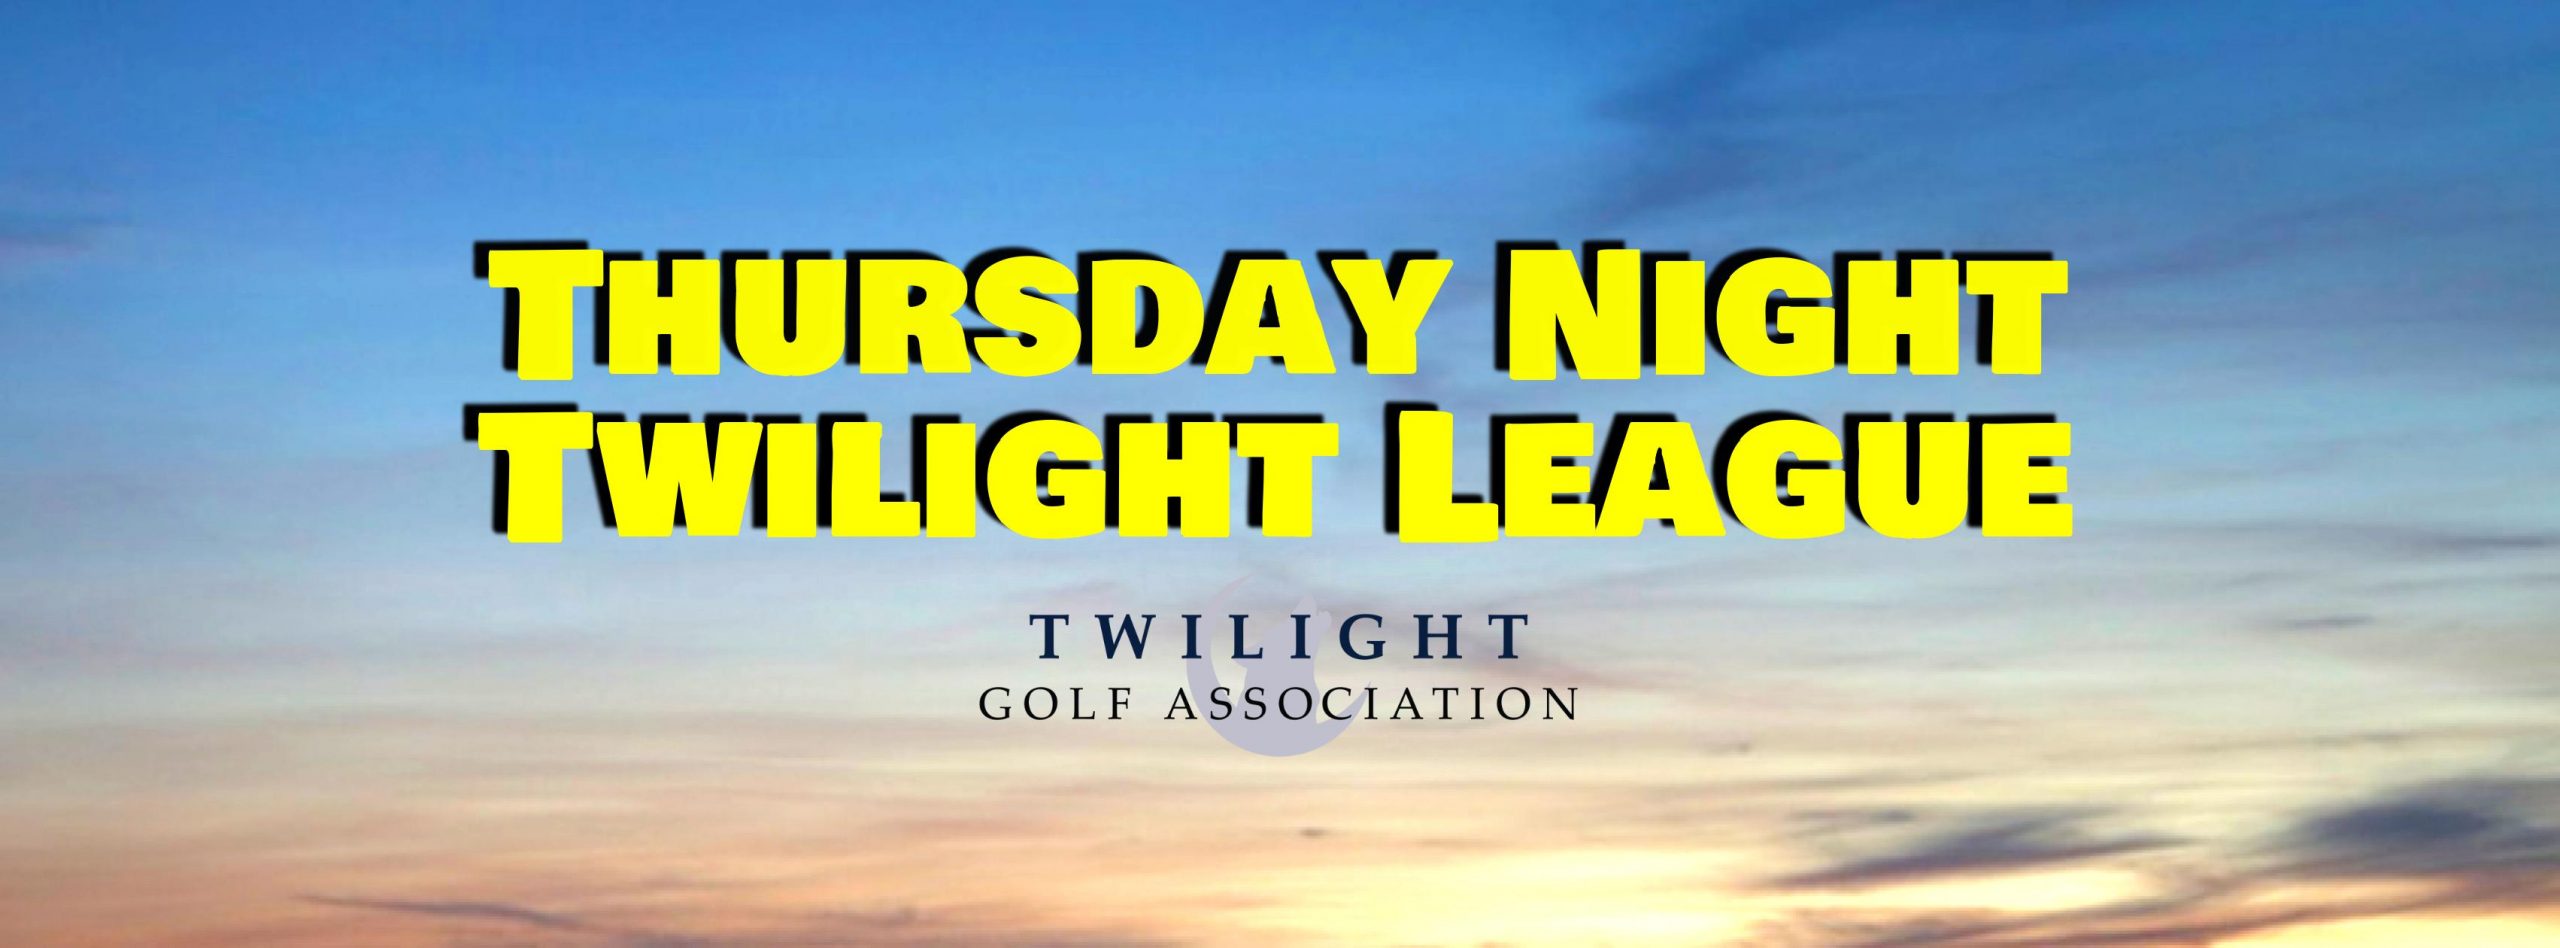 Thursday Twilight League at Myakka Pines Golf Club